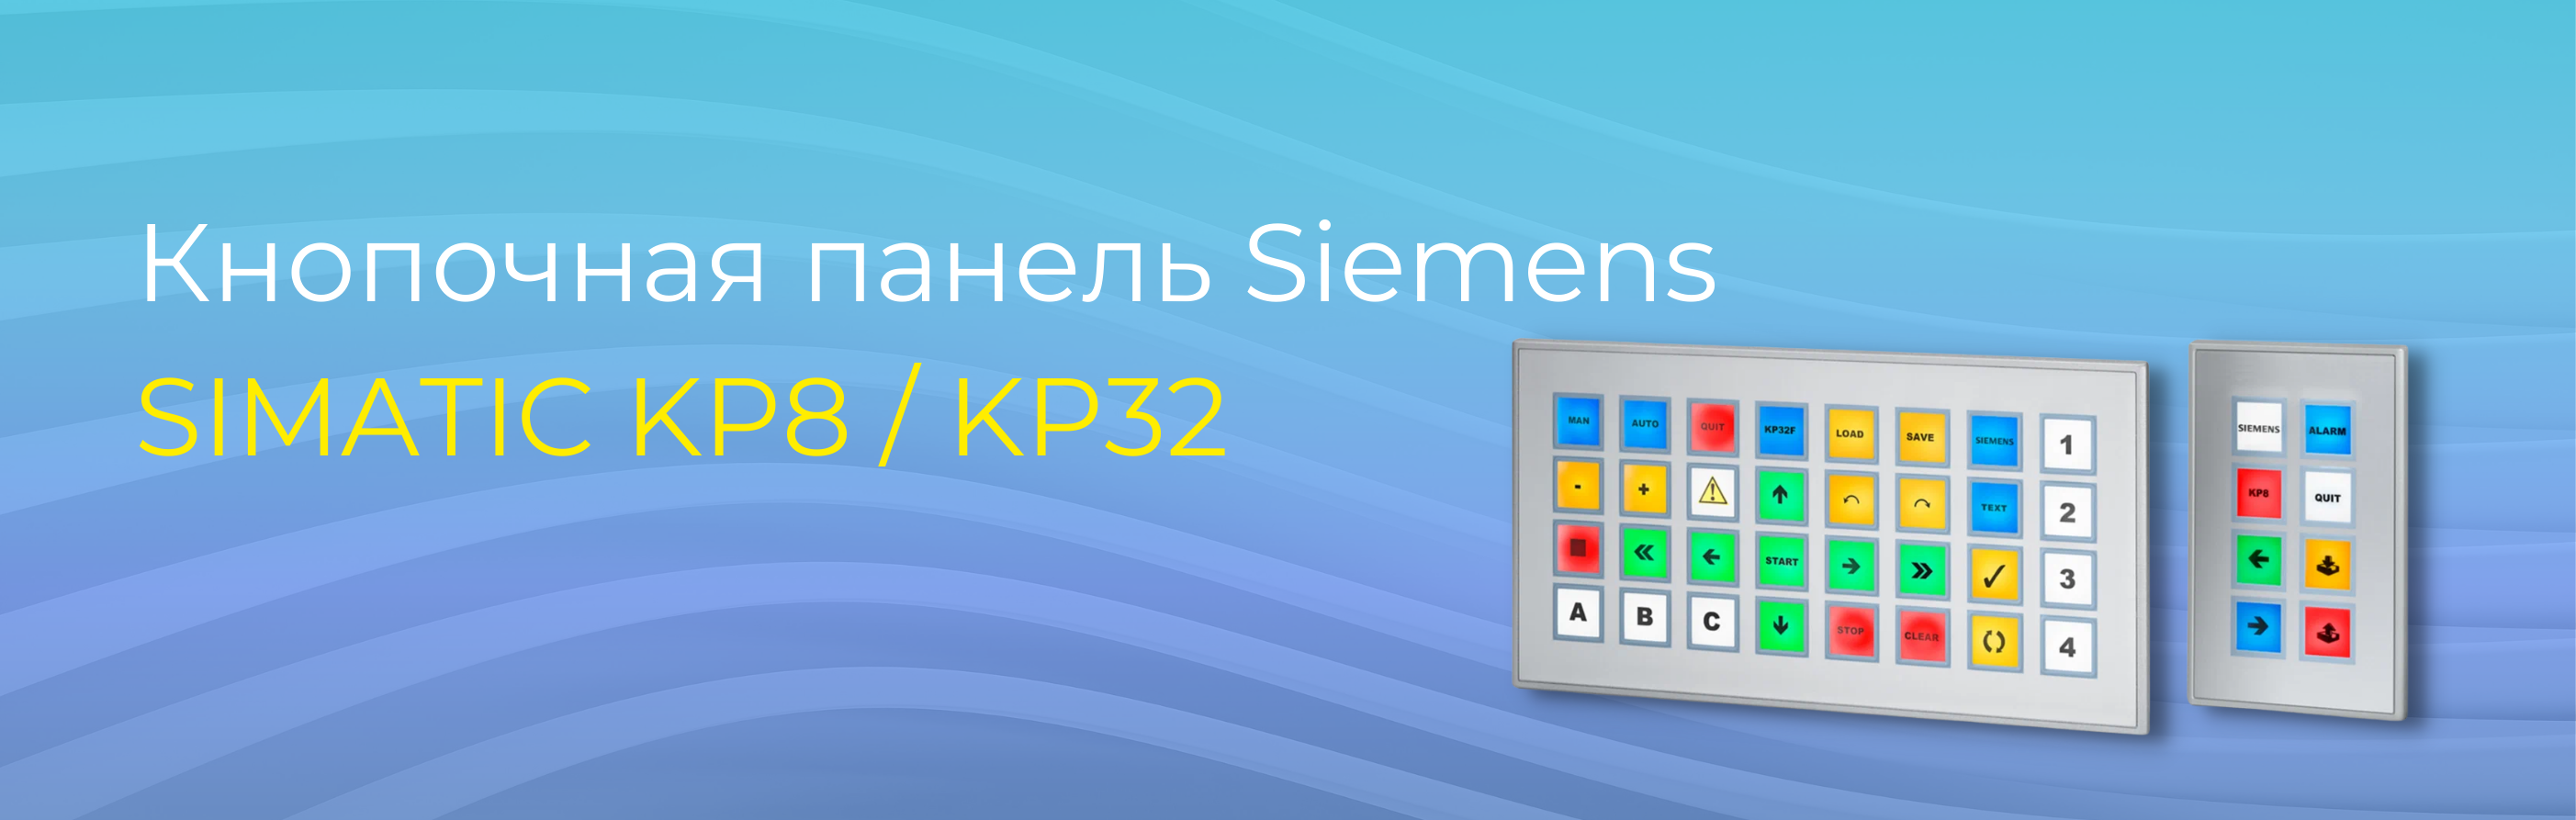 Программируемая кнопочная панель Siemens SIMATIC KP8 / KP32